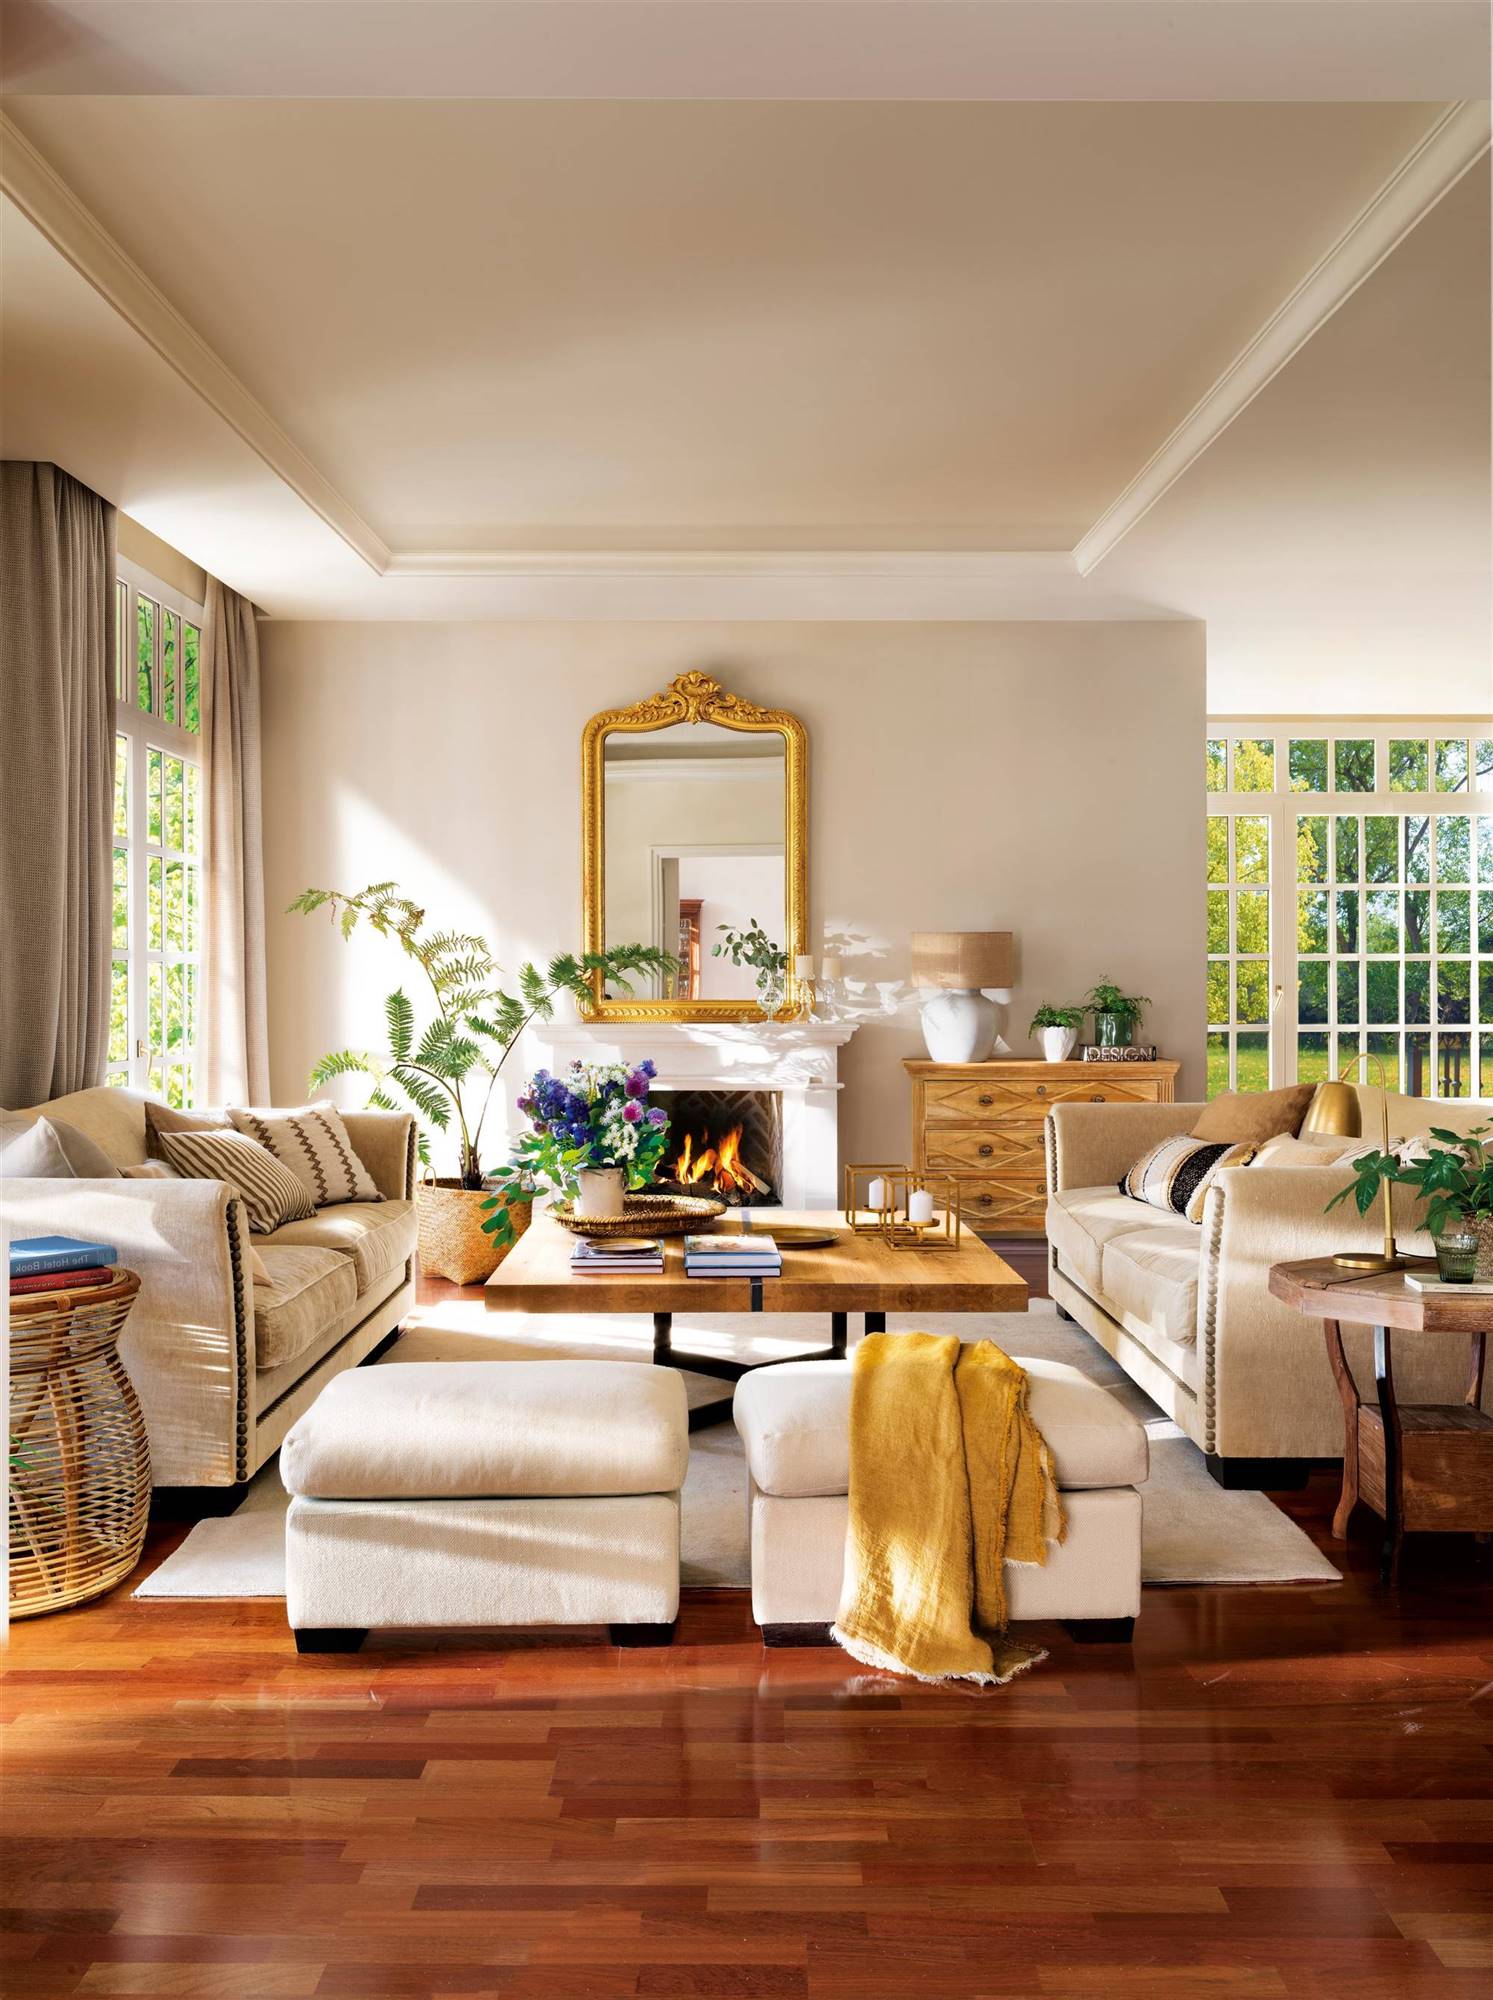 Salón clásico en colores neutros con muebles de madera y espejo dorado.